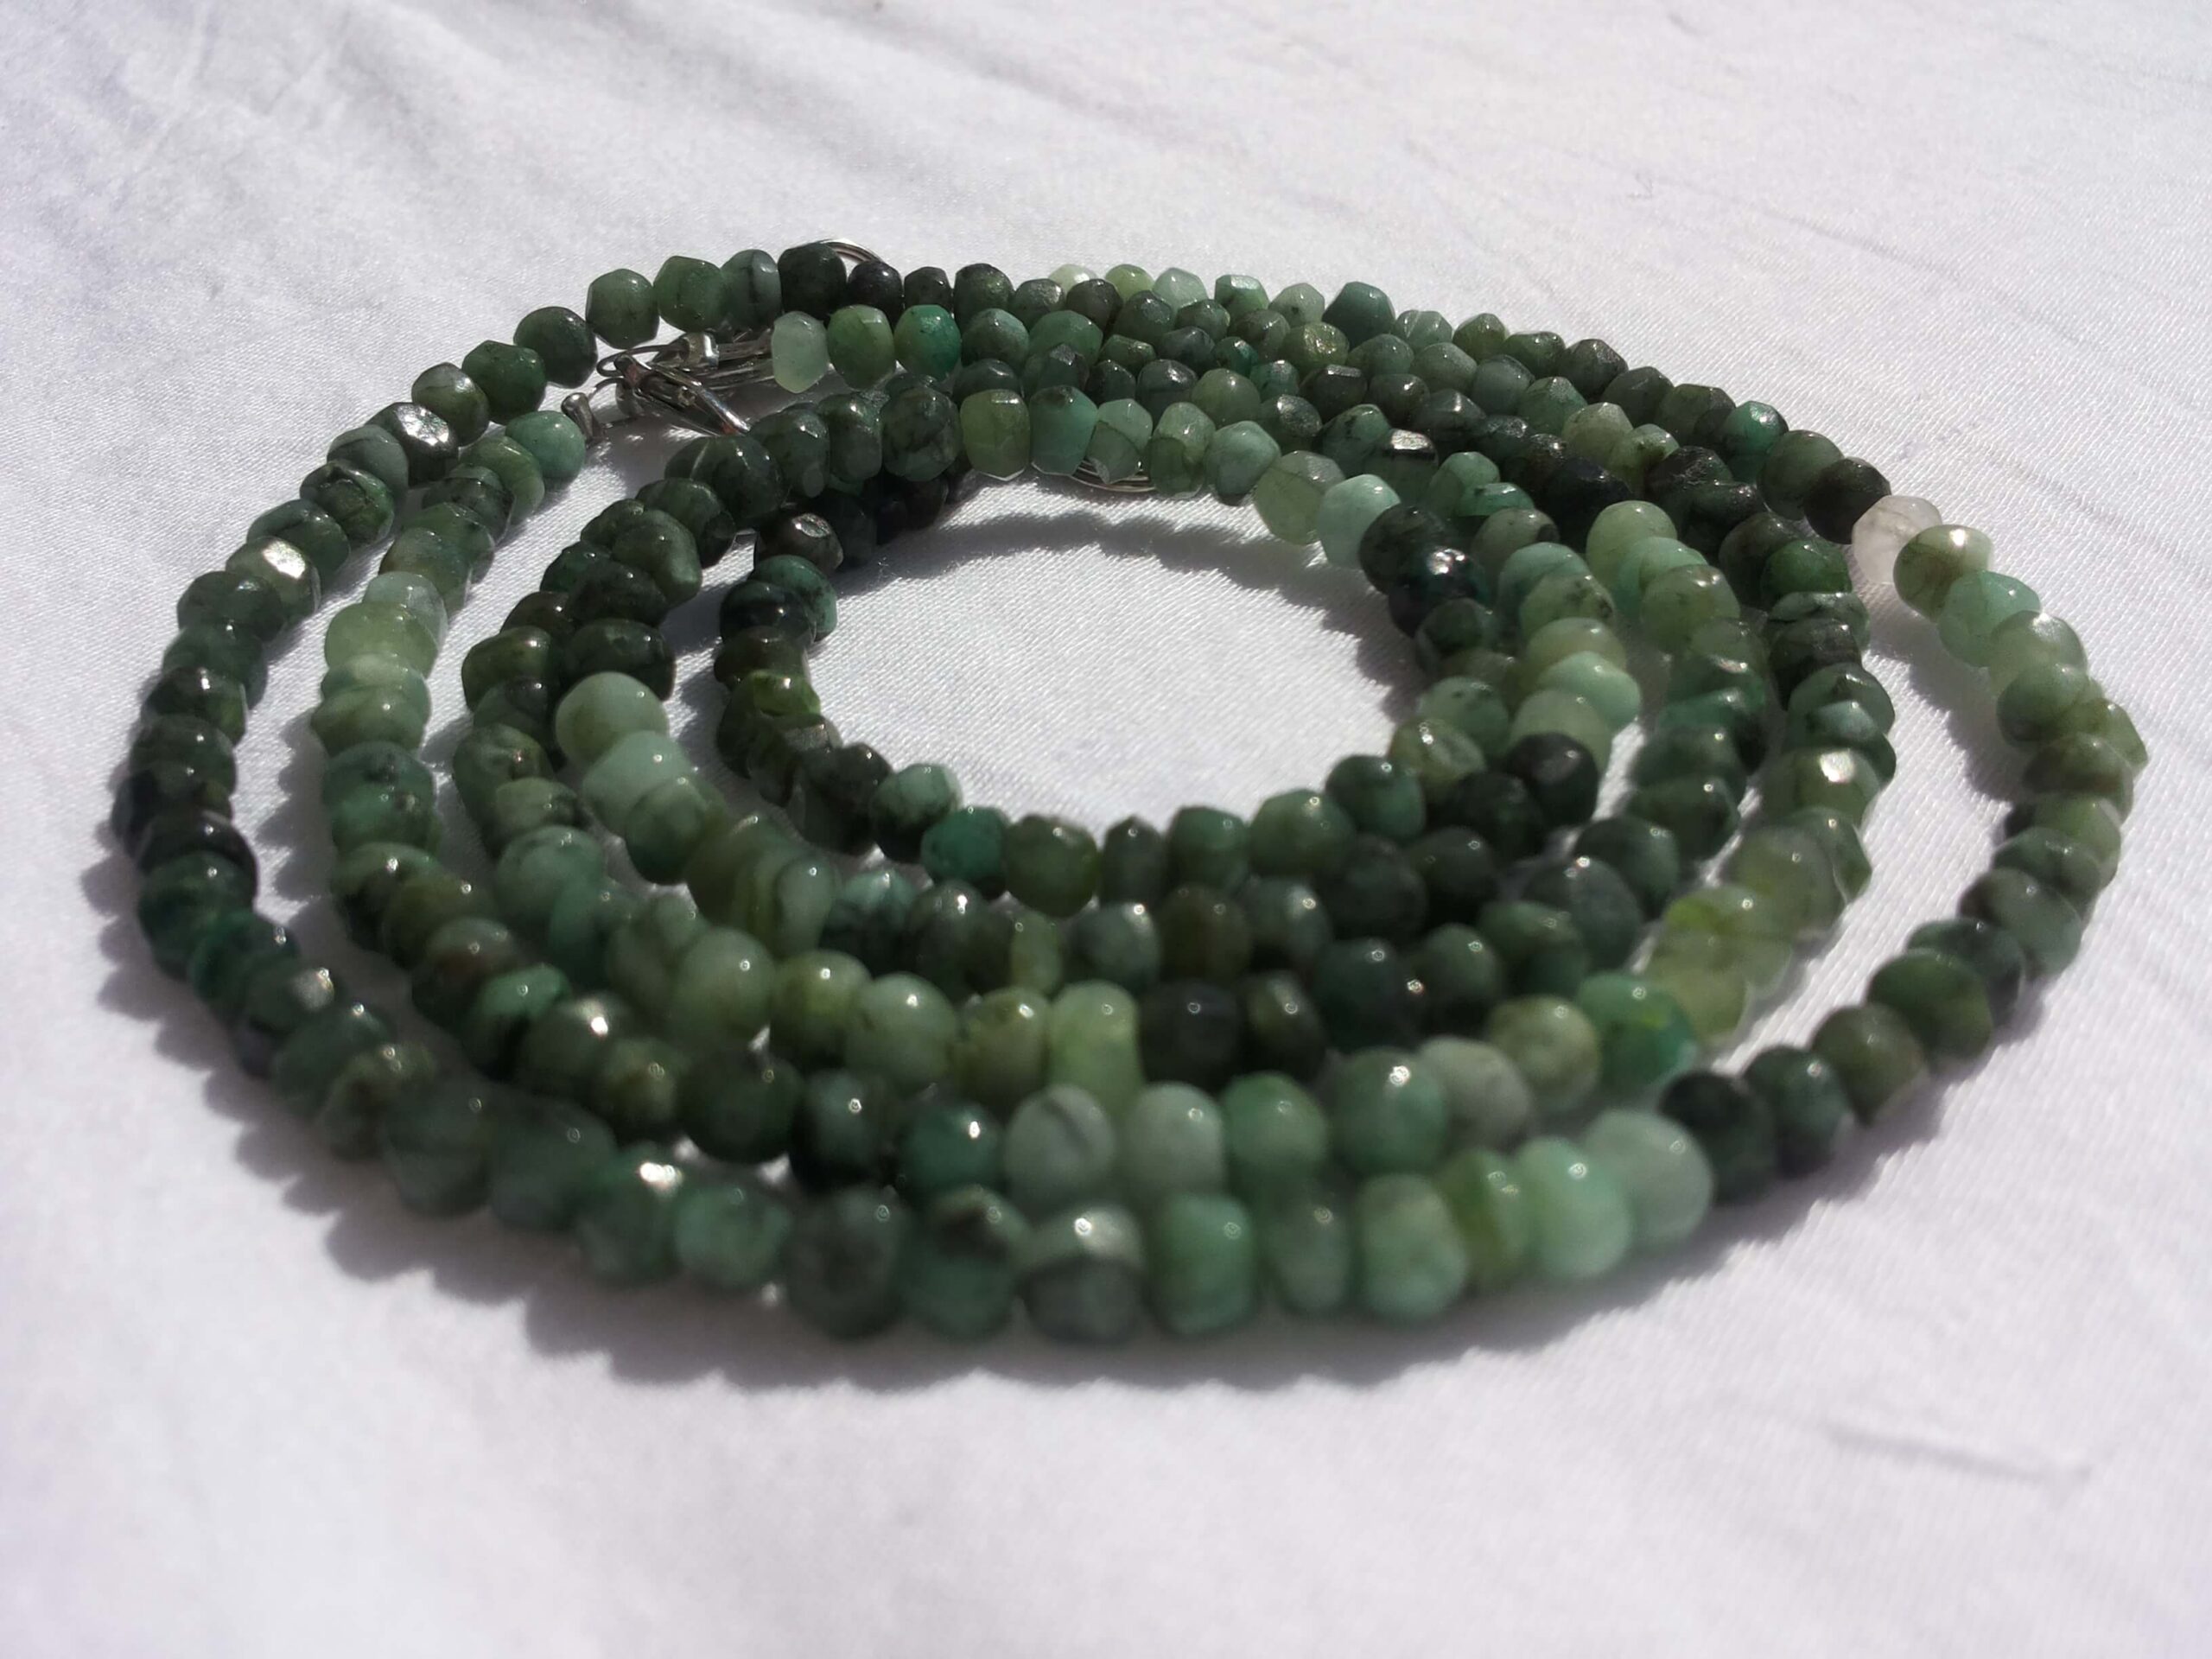 63-smaragd-kette-smaragdkette-halskette-schmuck-edelstein-edelsteinkette-kristall-mineral-venusblume-vitalzentrum-melinda-hebenstreit-nenzing